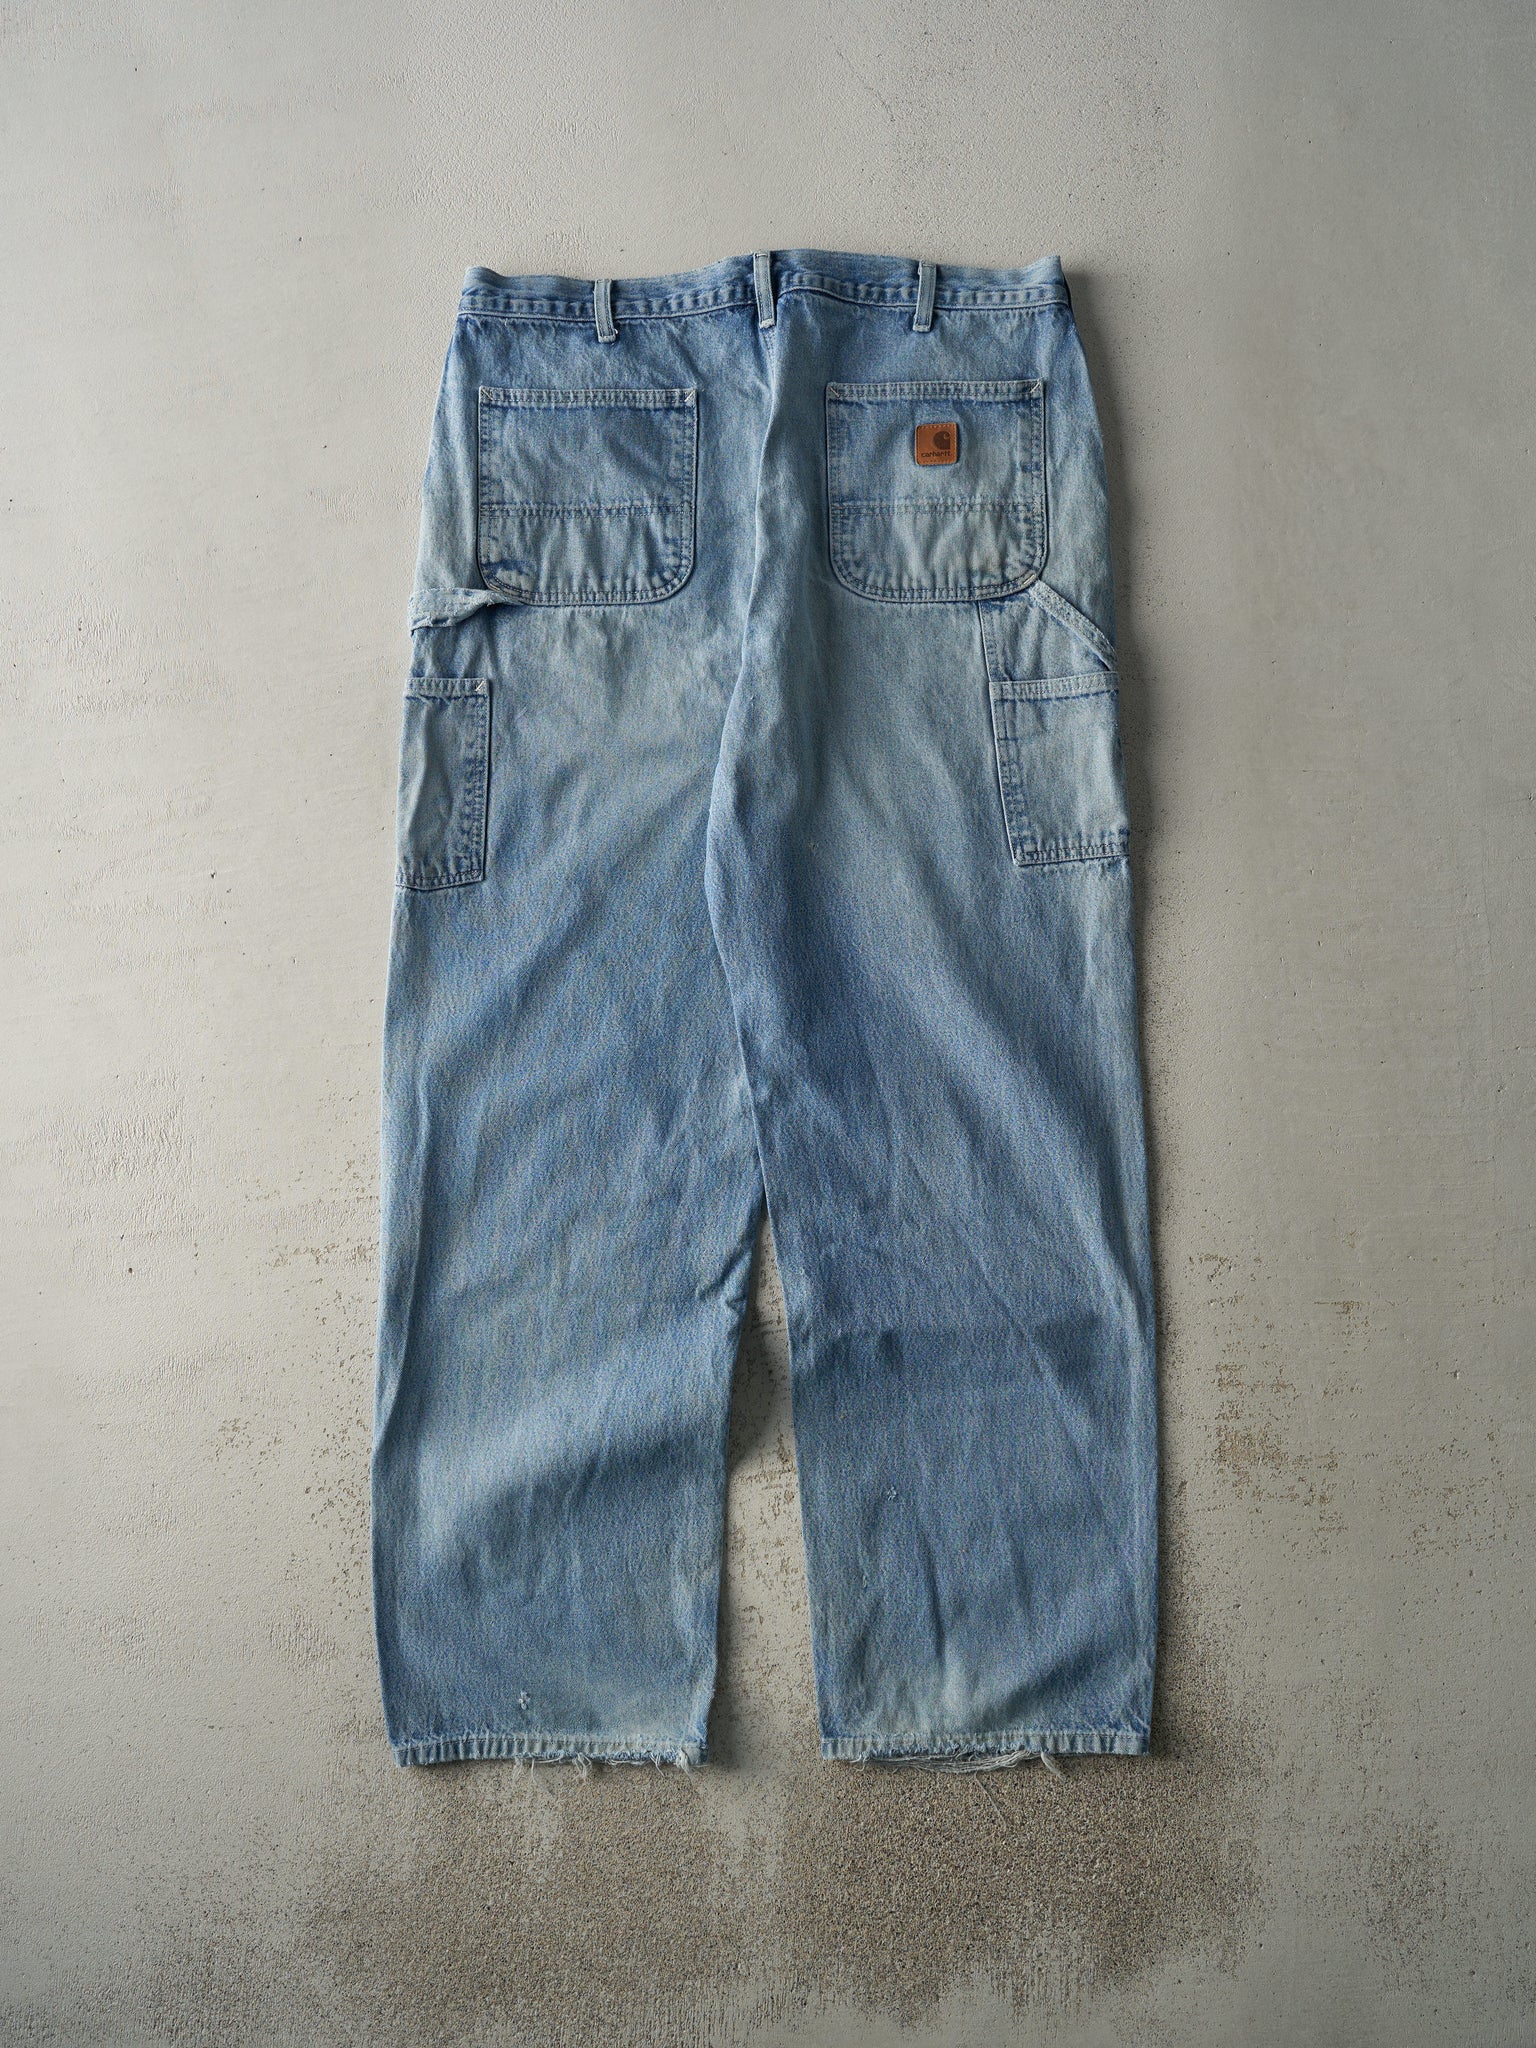 Vintage Y2K Light Wash Dungaree Fit Carhartt Carpenter Jeans (38x32.5)